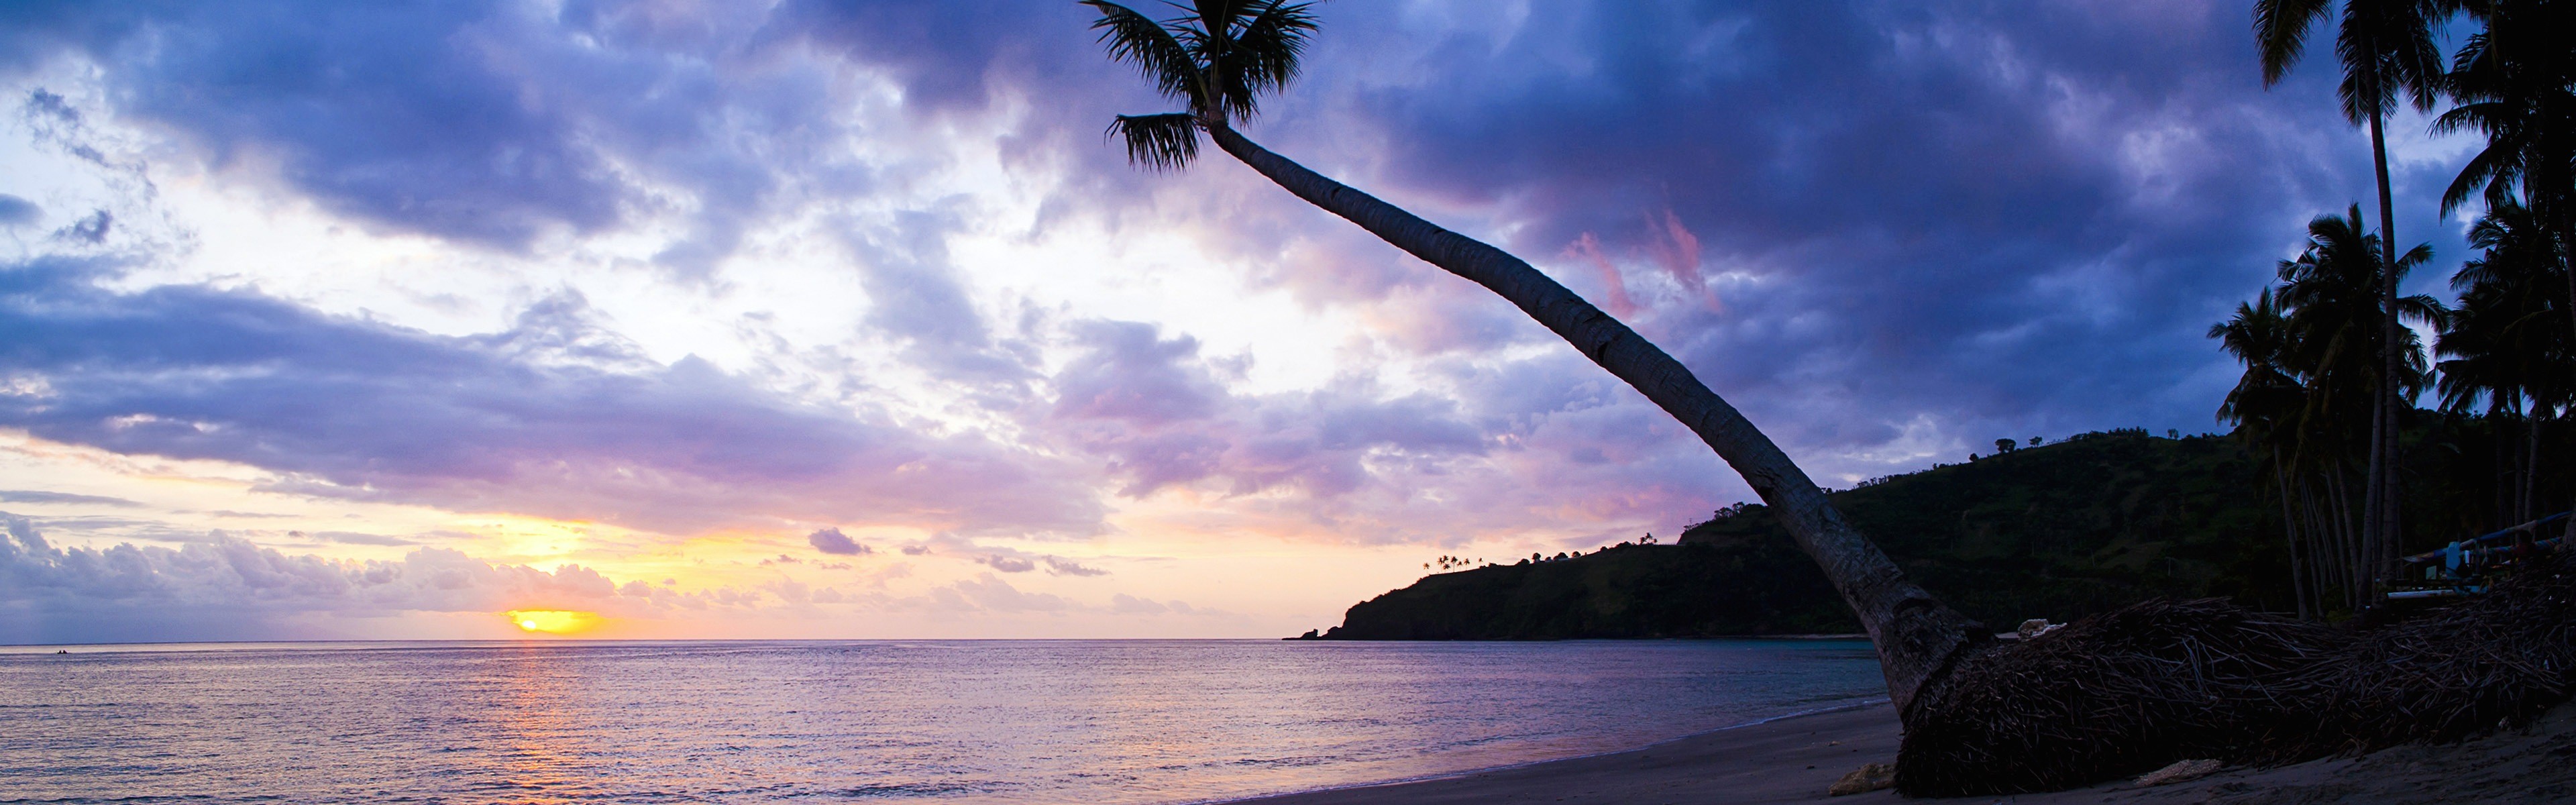 3840x1200, Beautiful Beach Sunset, Windows 8 Panoramic - 4k Panoramic  Wallpaper Beach - 3840x1200 Wallpaper 